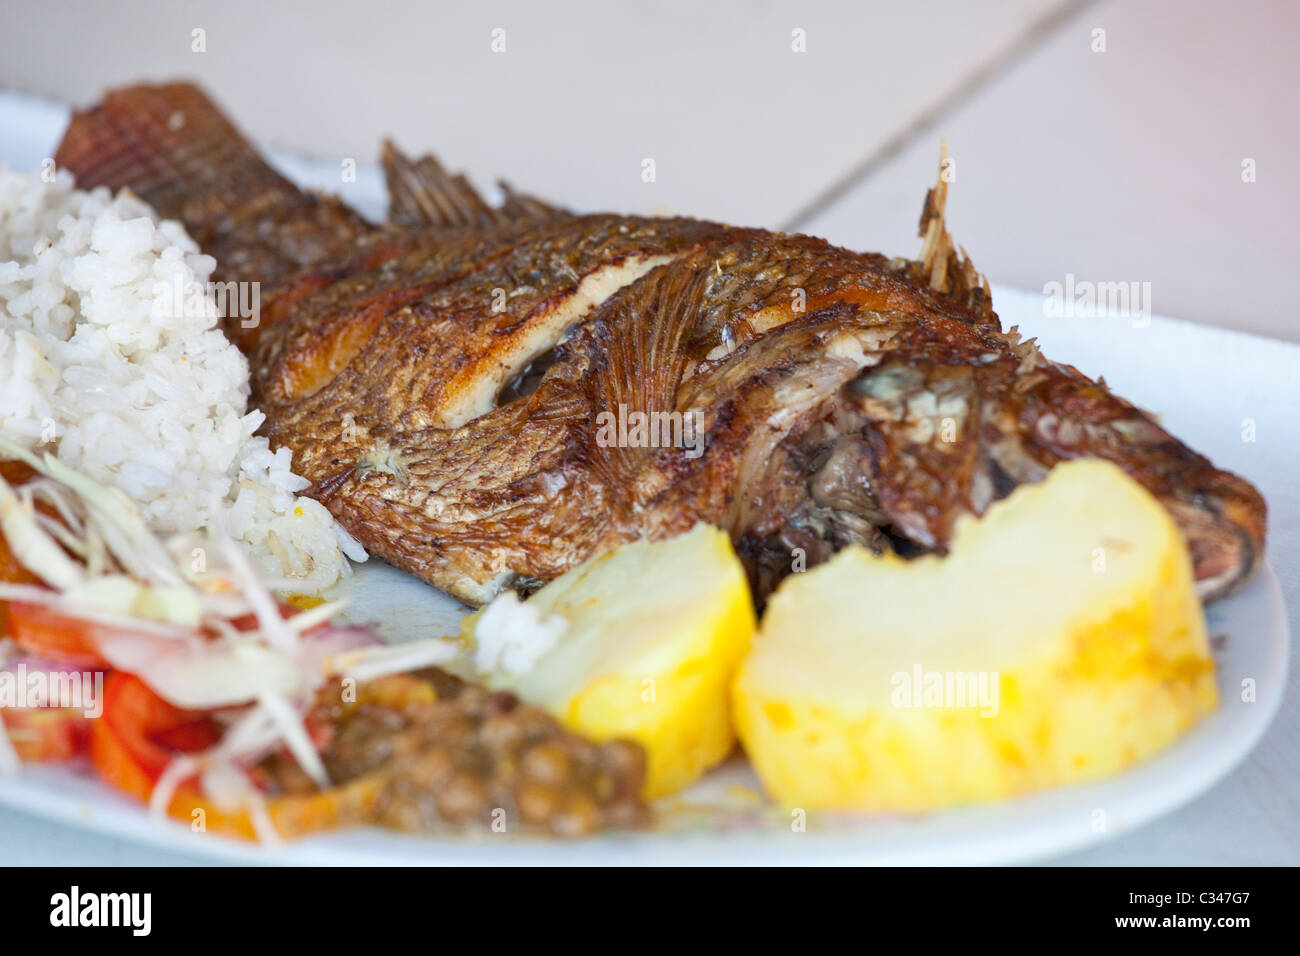 La friture de poissons, Barranquilla, Colombie Banque D'Images